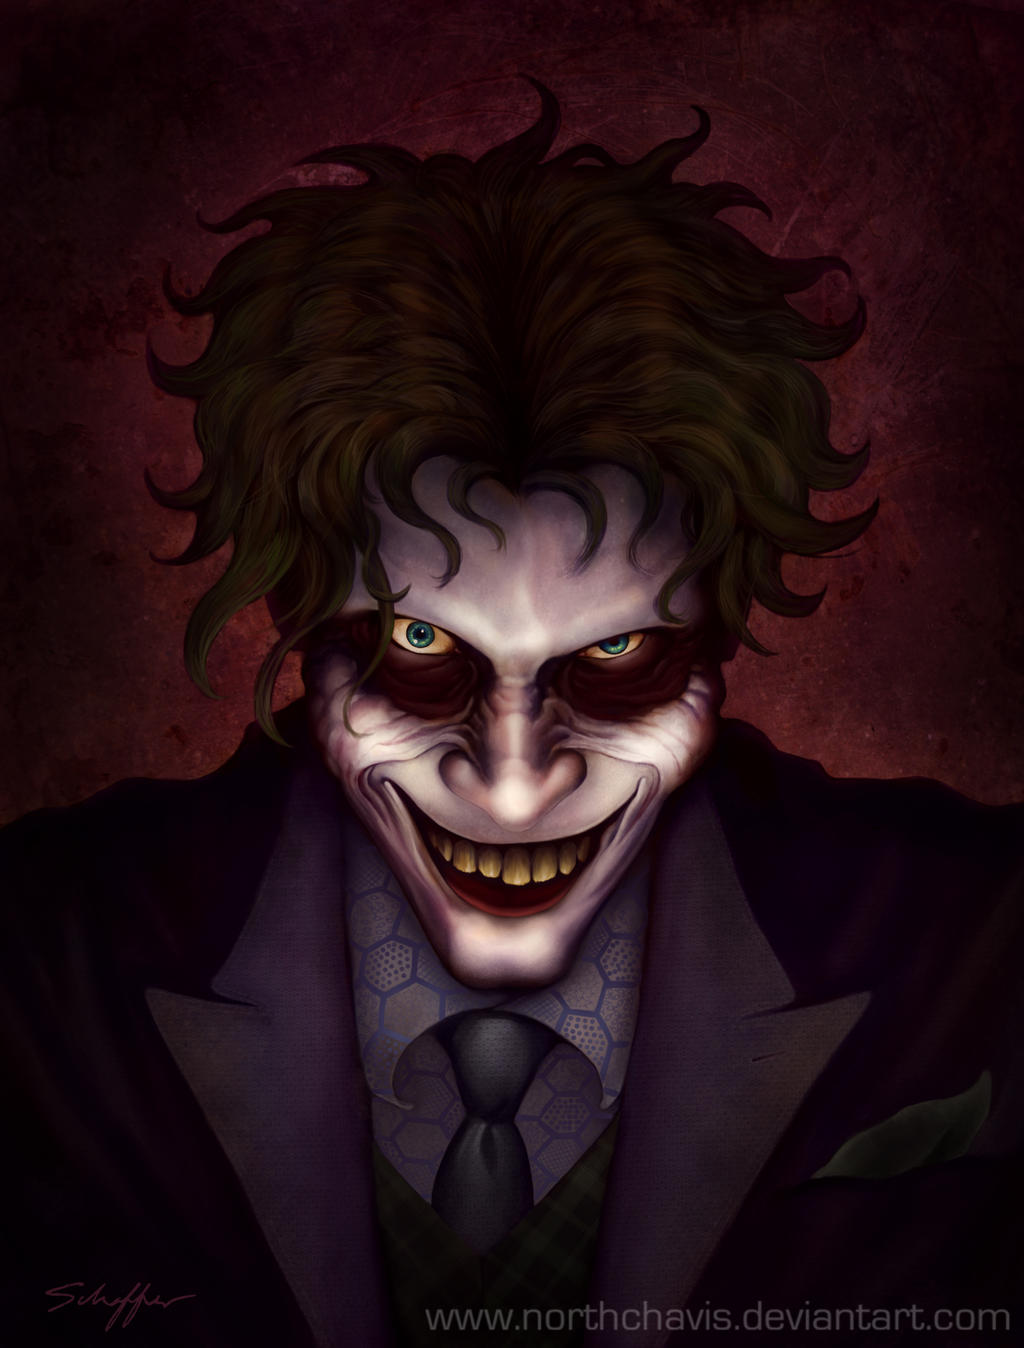 Joker by StephenSchaffer on DeviantArt